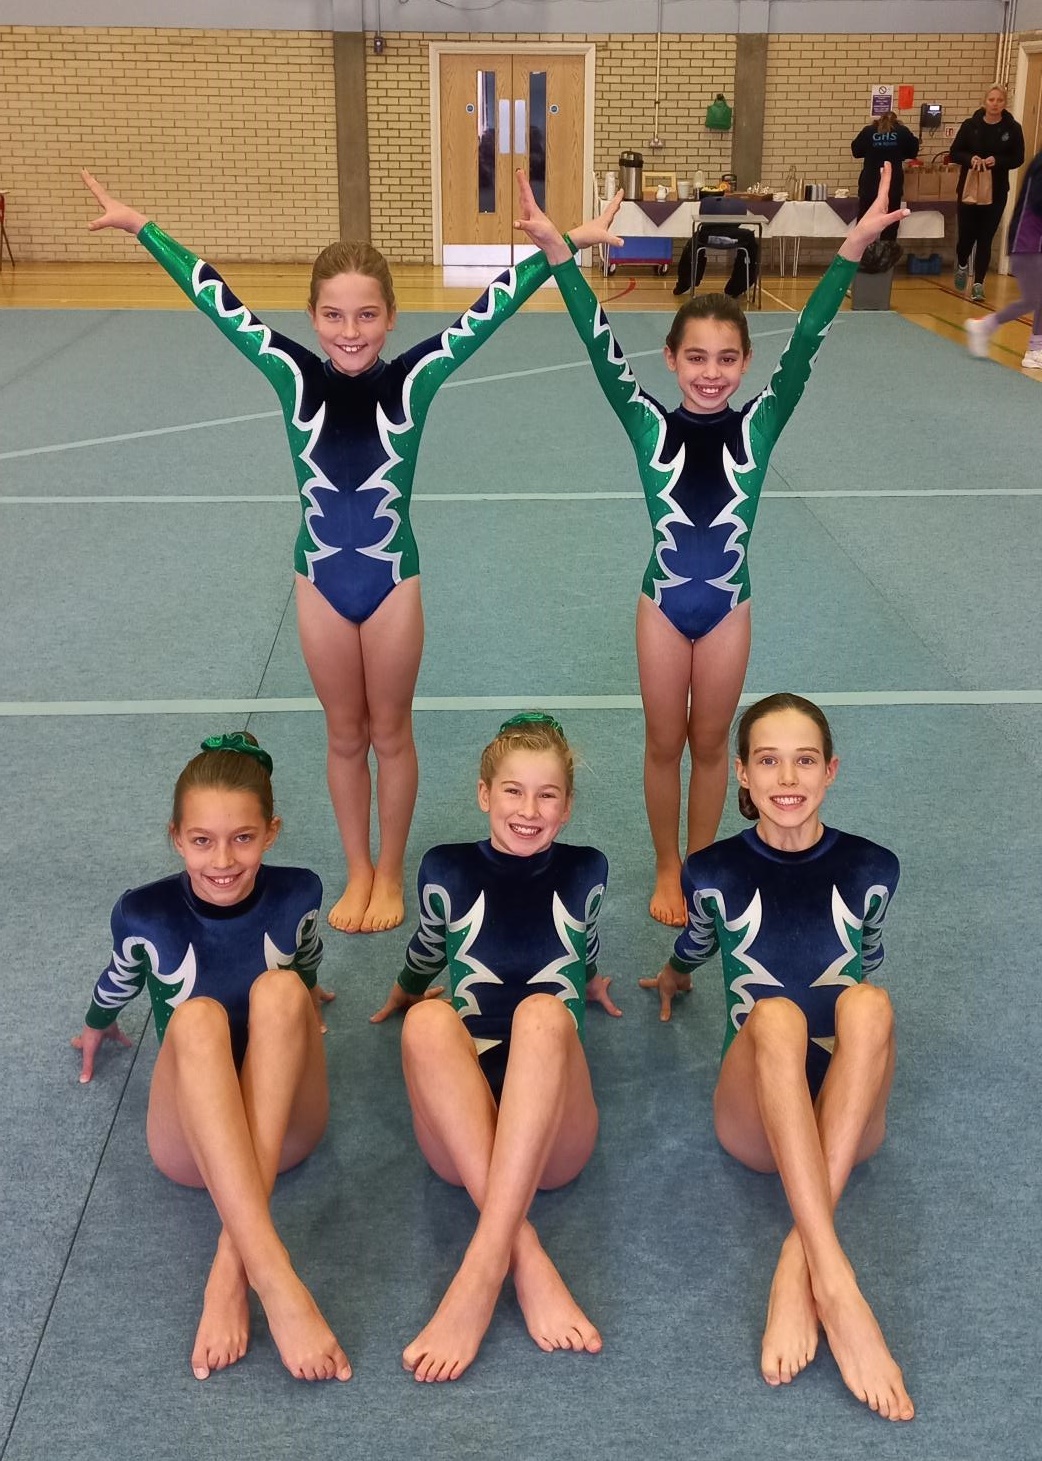 U11 Gymnastics Team rank 4th in Surrey Schools